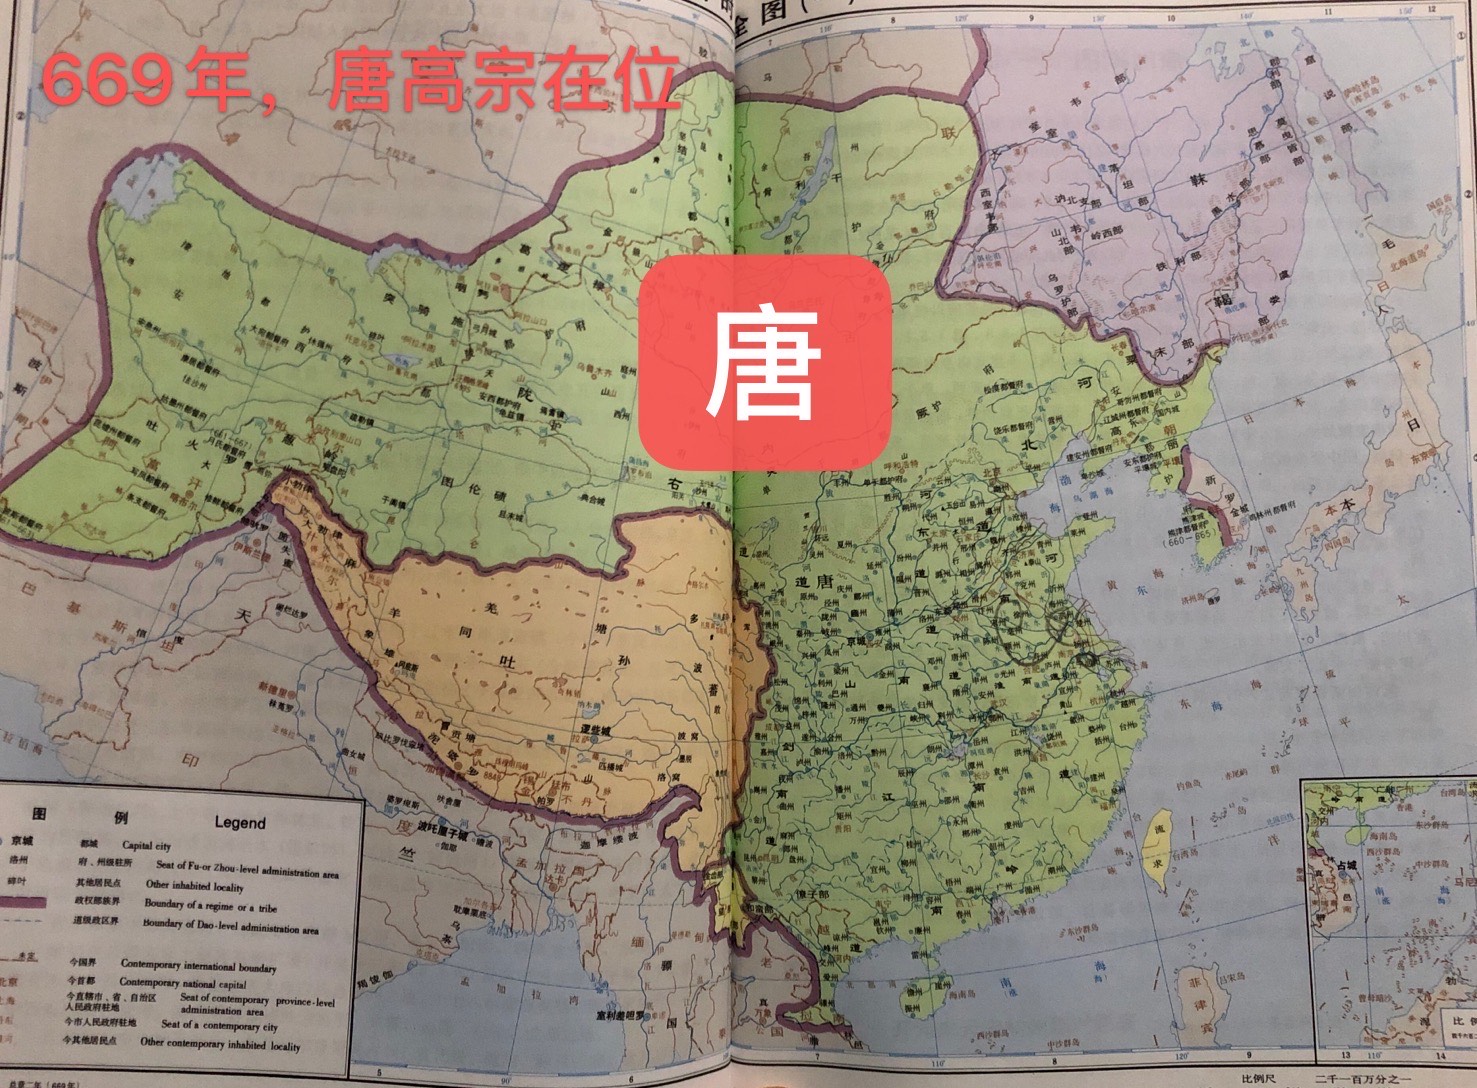 唐朝时期地图 李世民图片